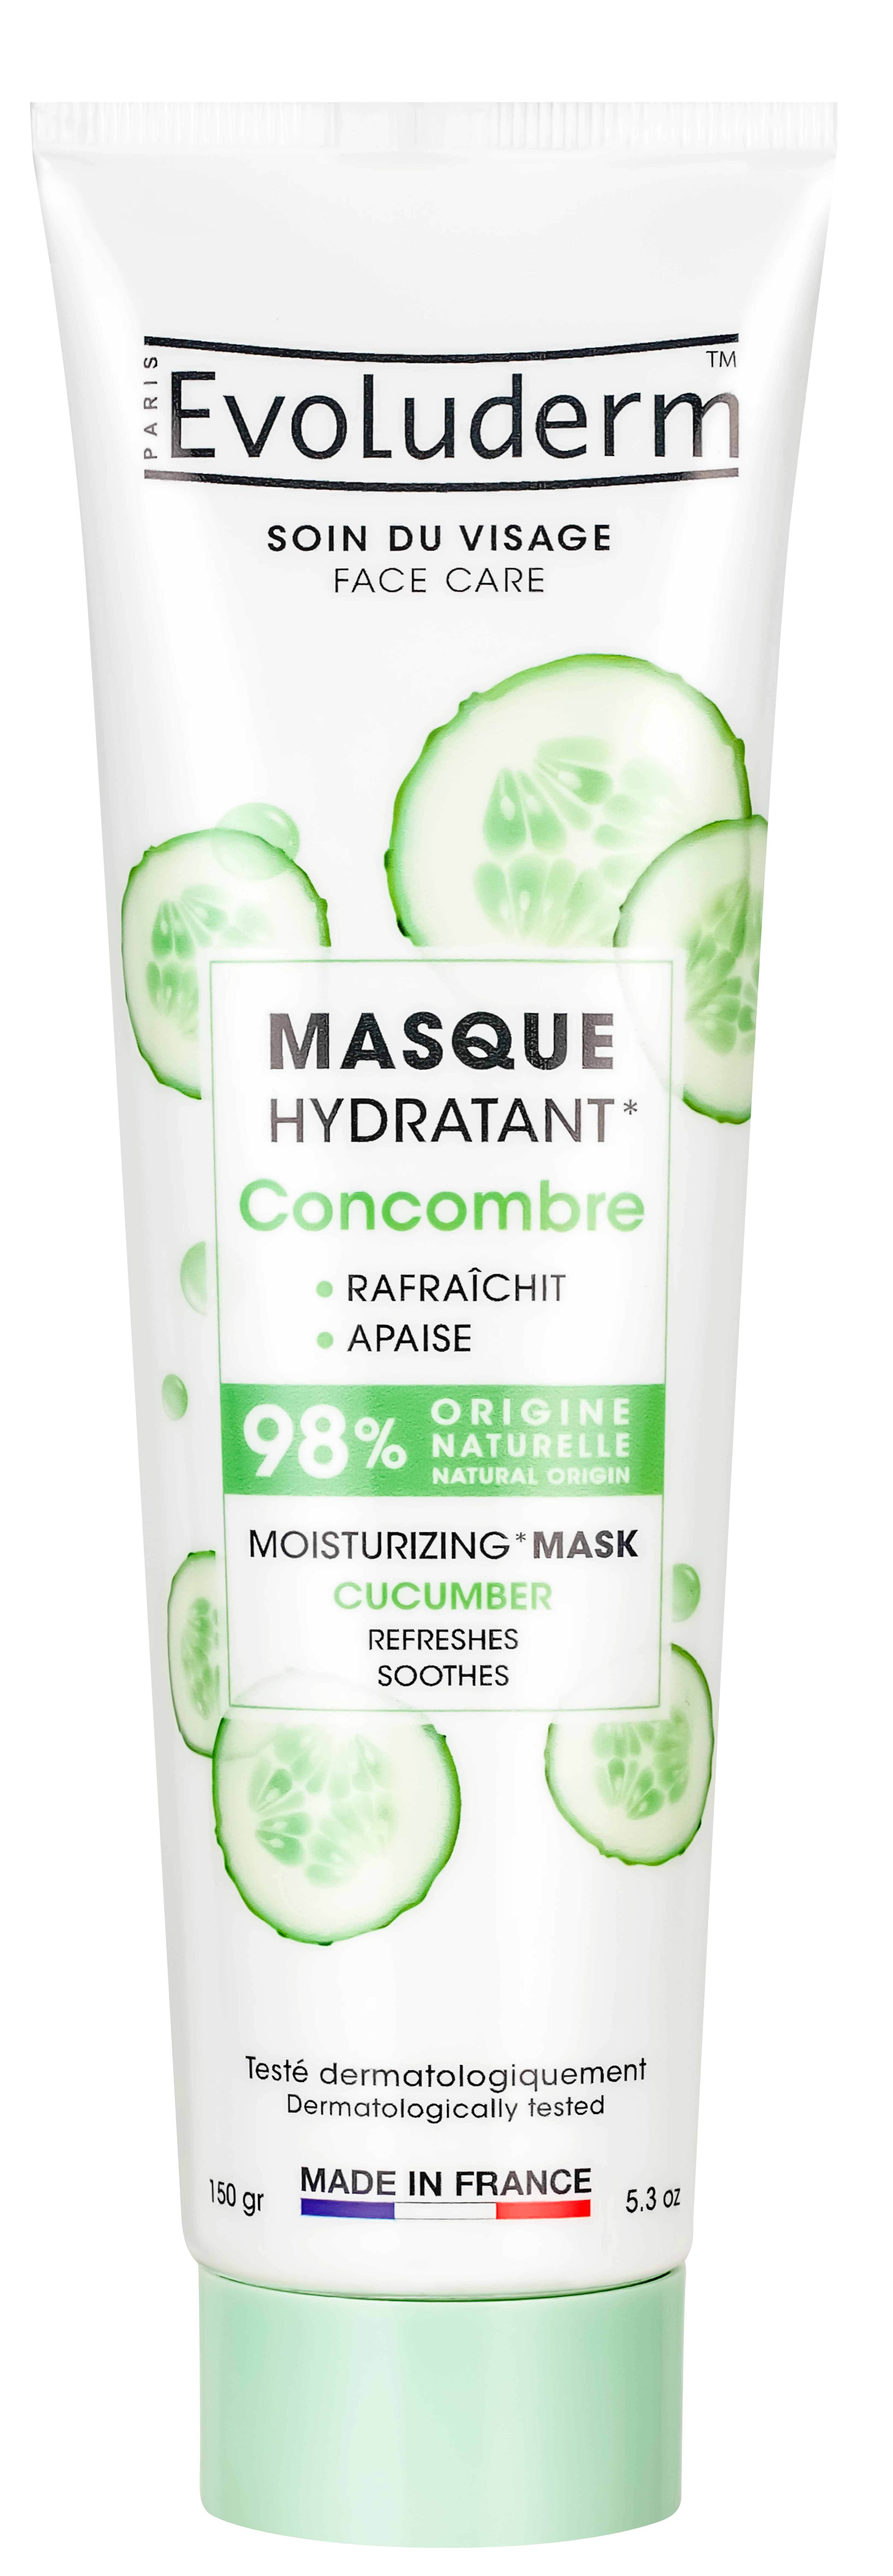 Masque Hydratant Concombre 150ml - Evoluderm